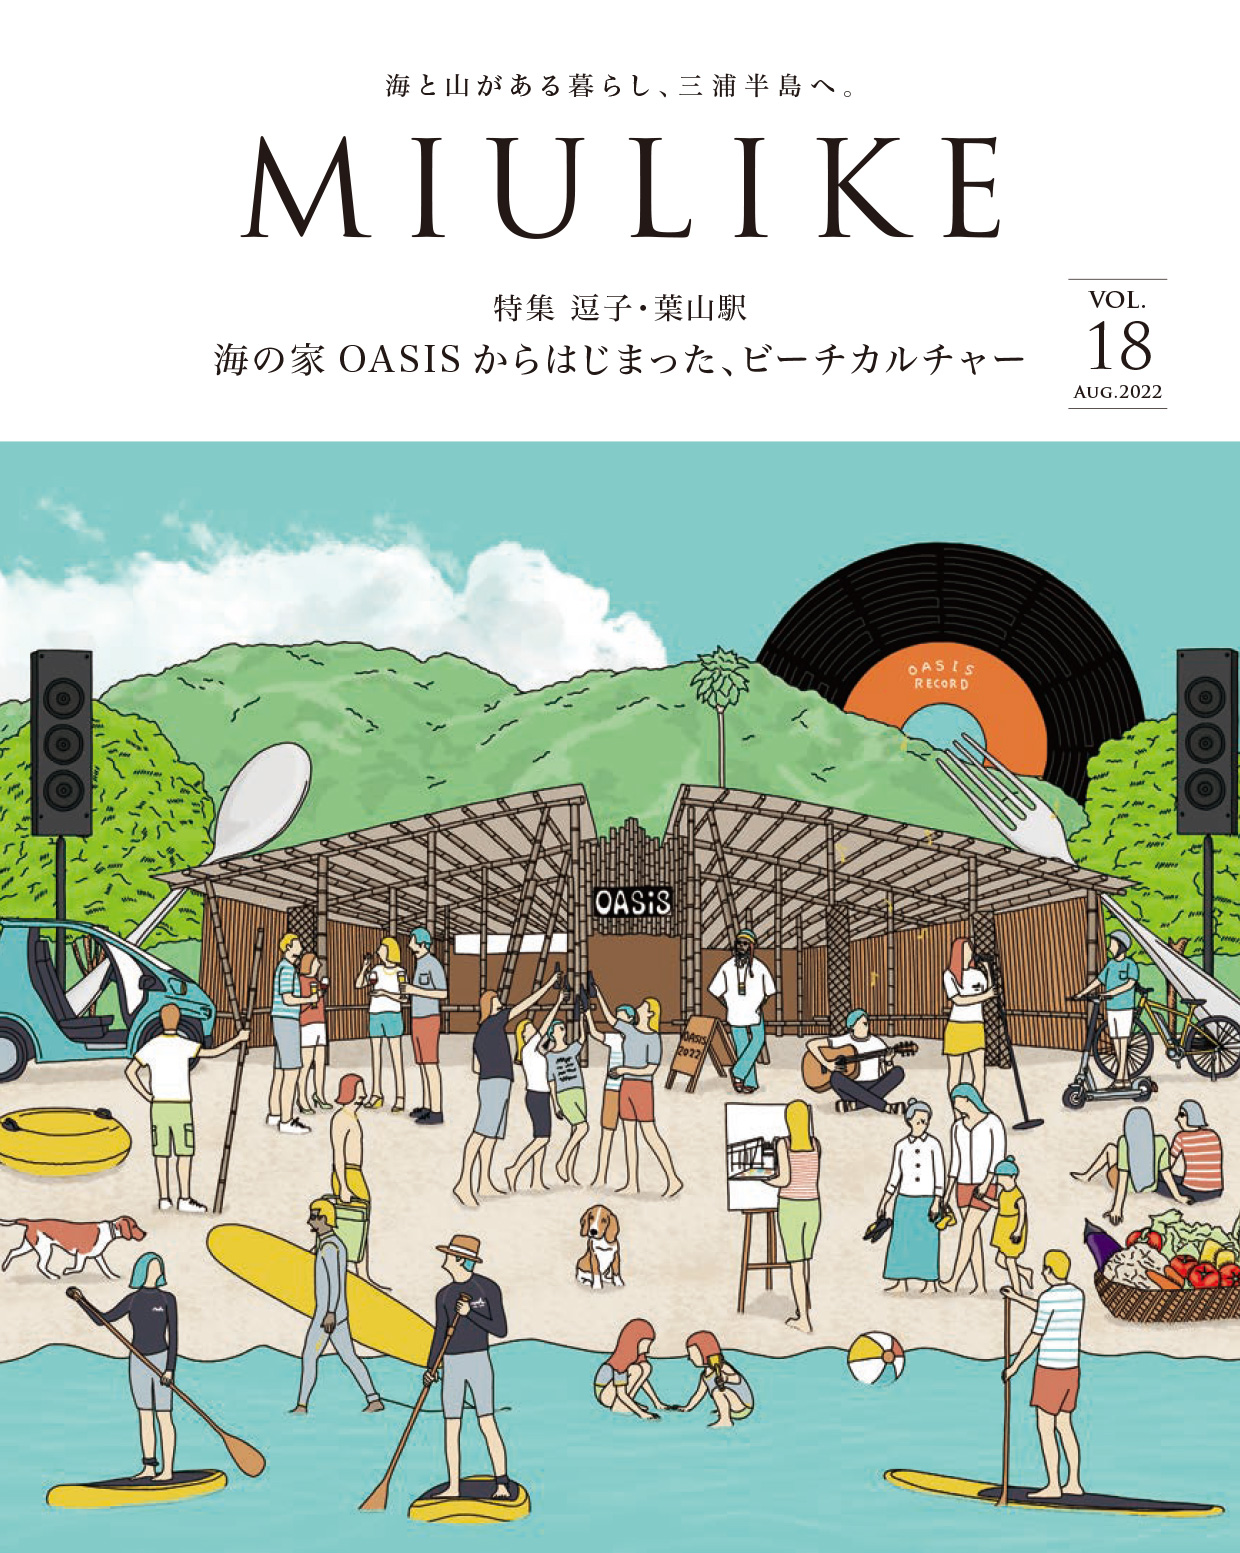 京急電鉄「MIULIKE」